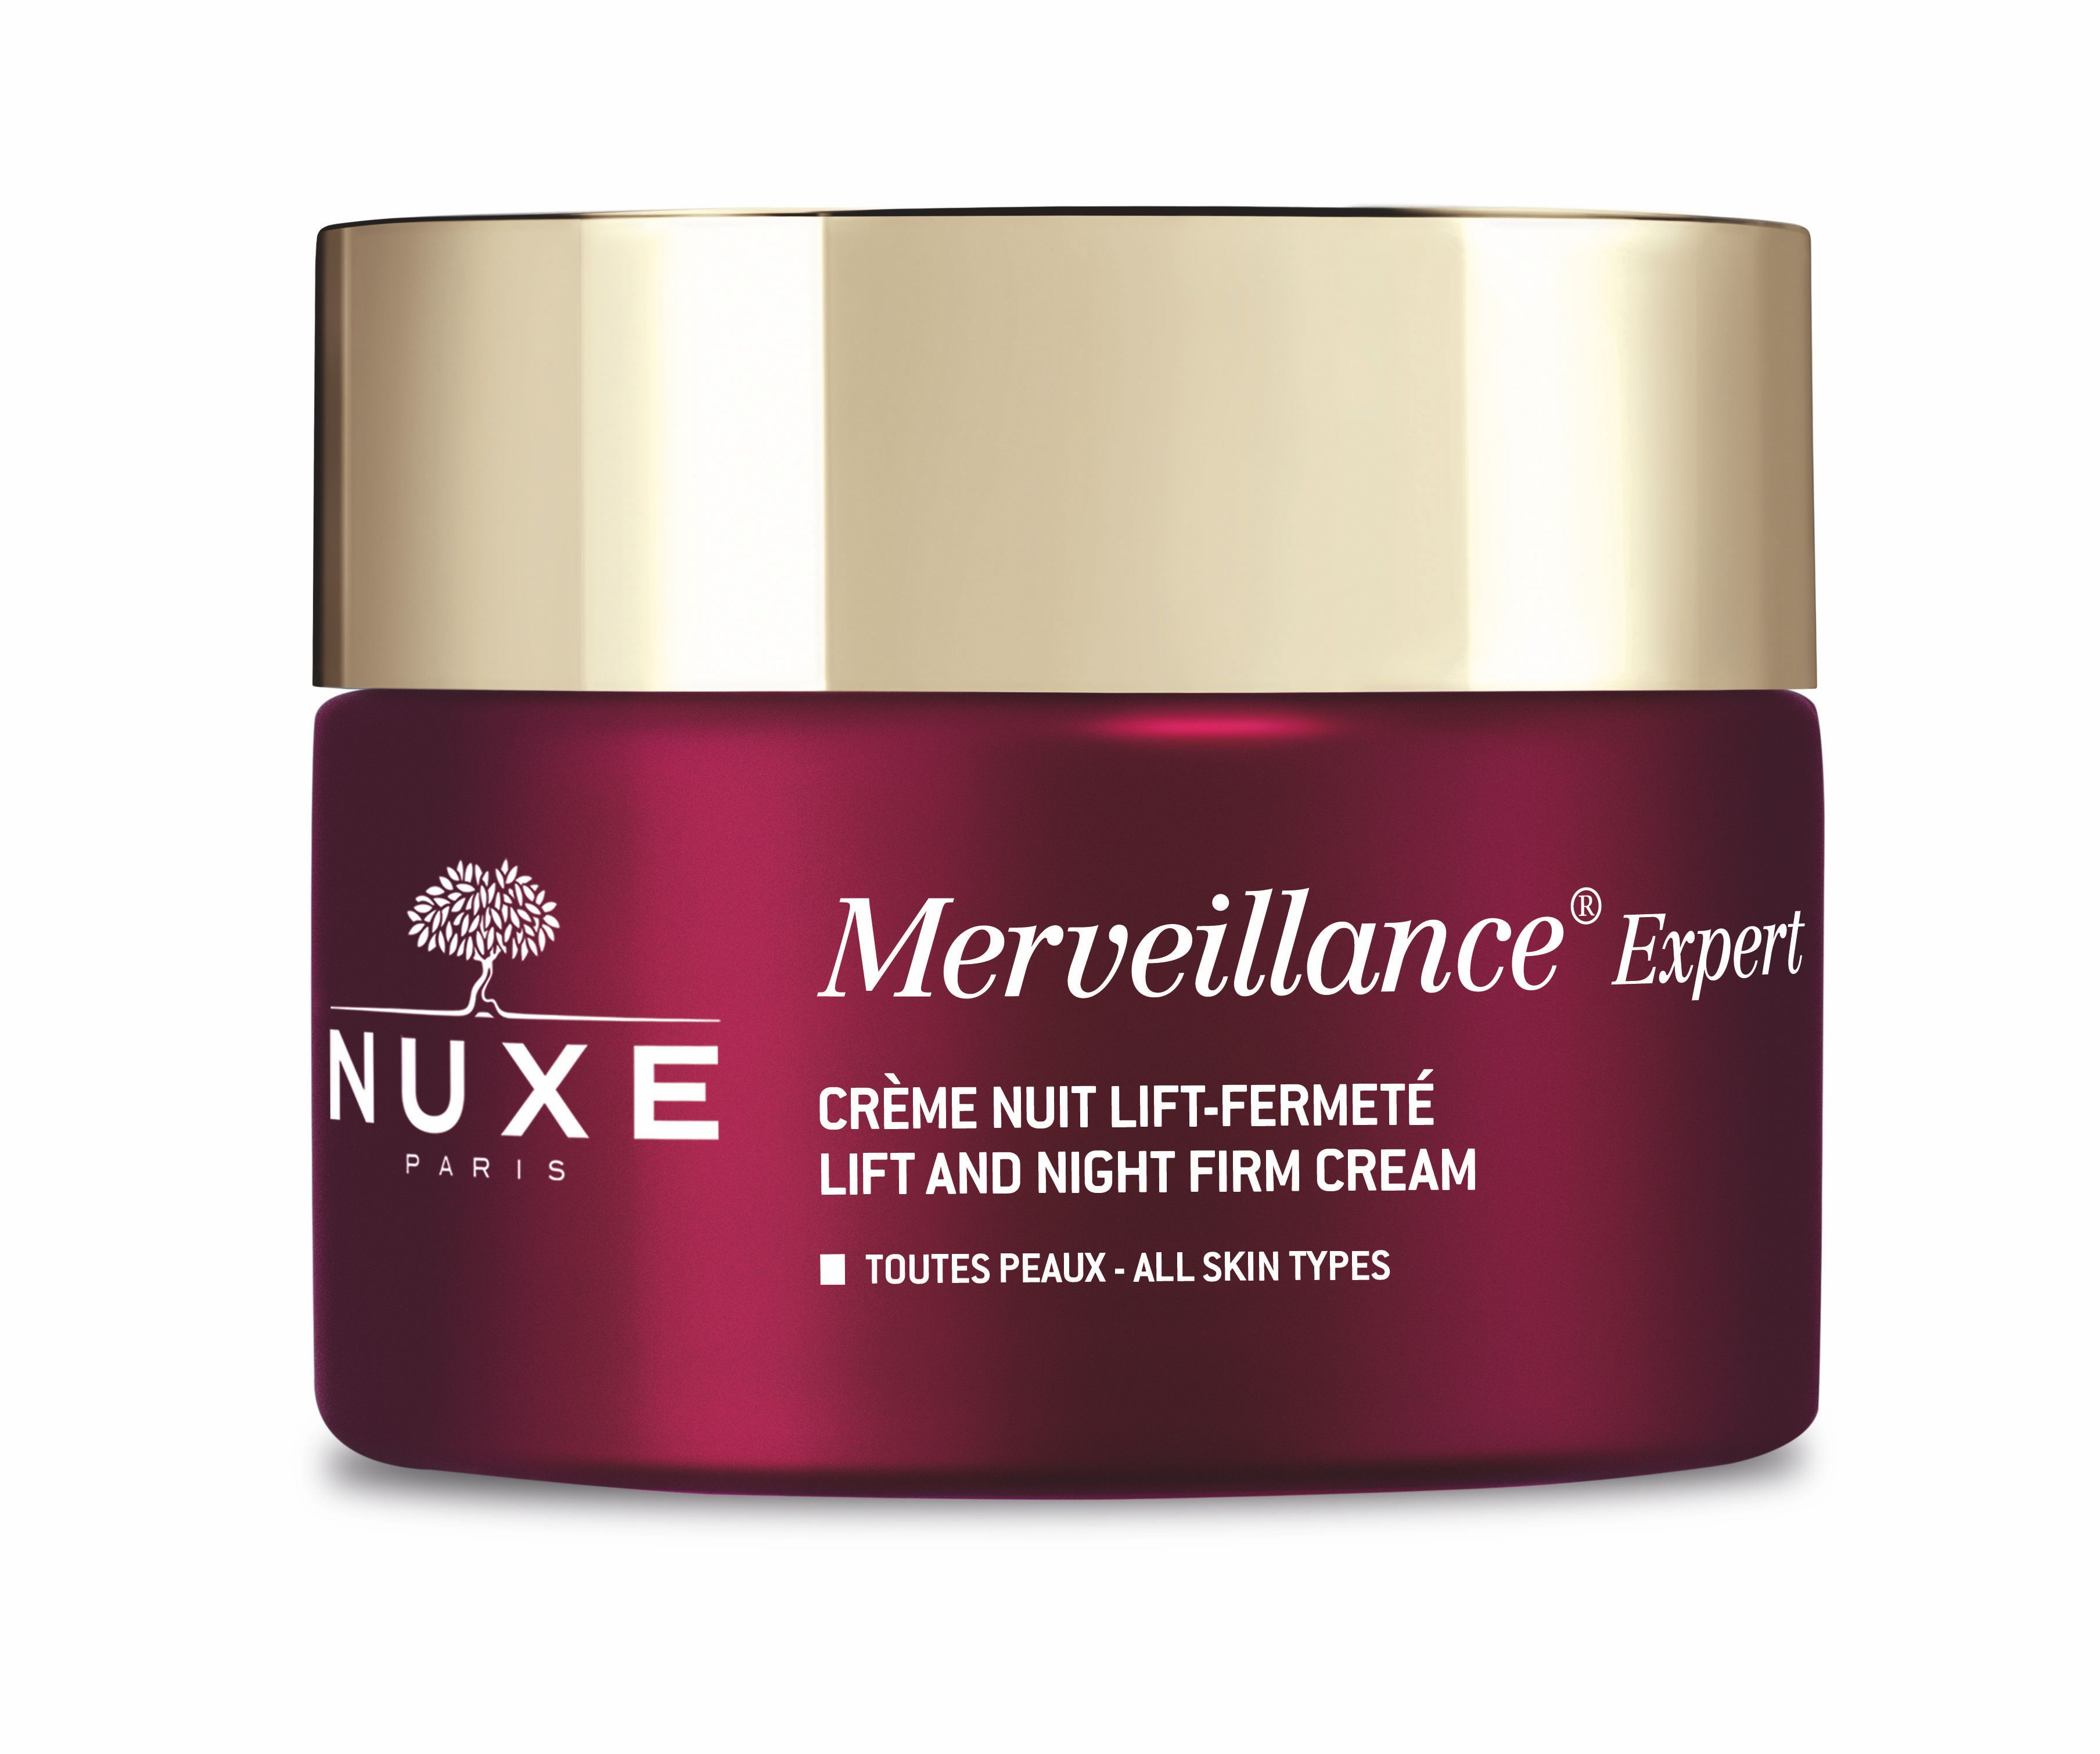 Nuxe Merveillance Expert noční zpevňující péče 50 ml Nuxe